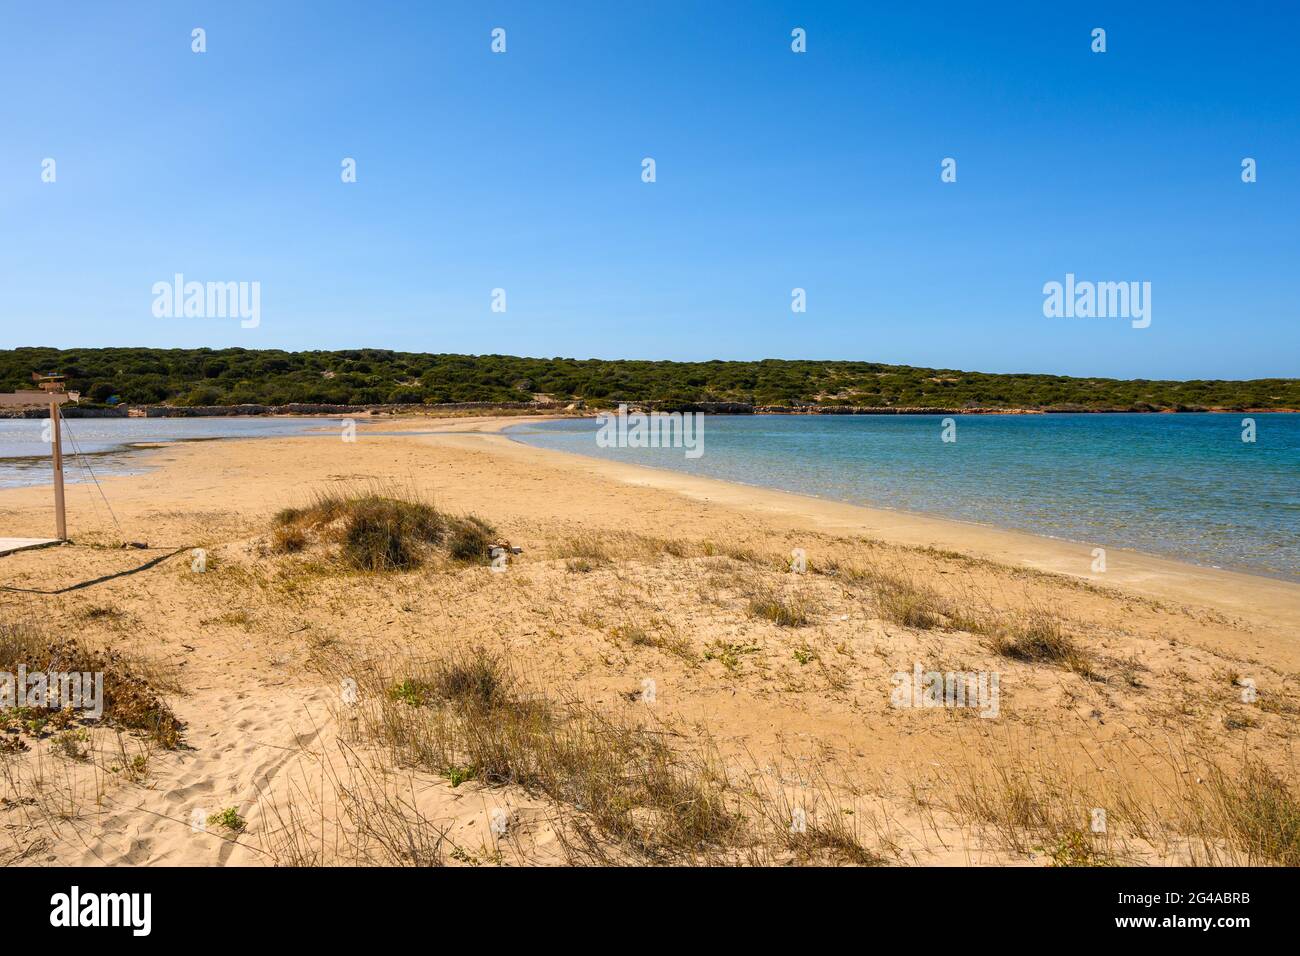 Stefano Beach con una striscia di sabbia che collega l'Isola di Paros con l'isolotto di Oikonomou. Questa spiaggia isolata si trova tra Naoussa e Santa Foto Stock